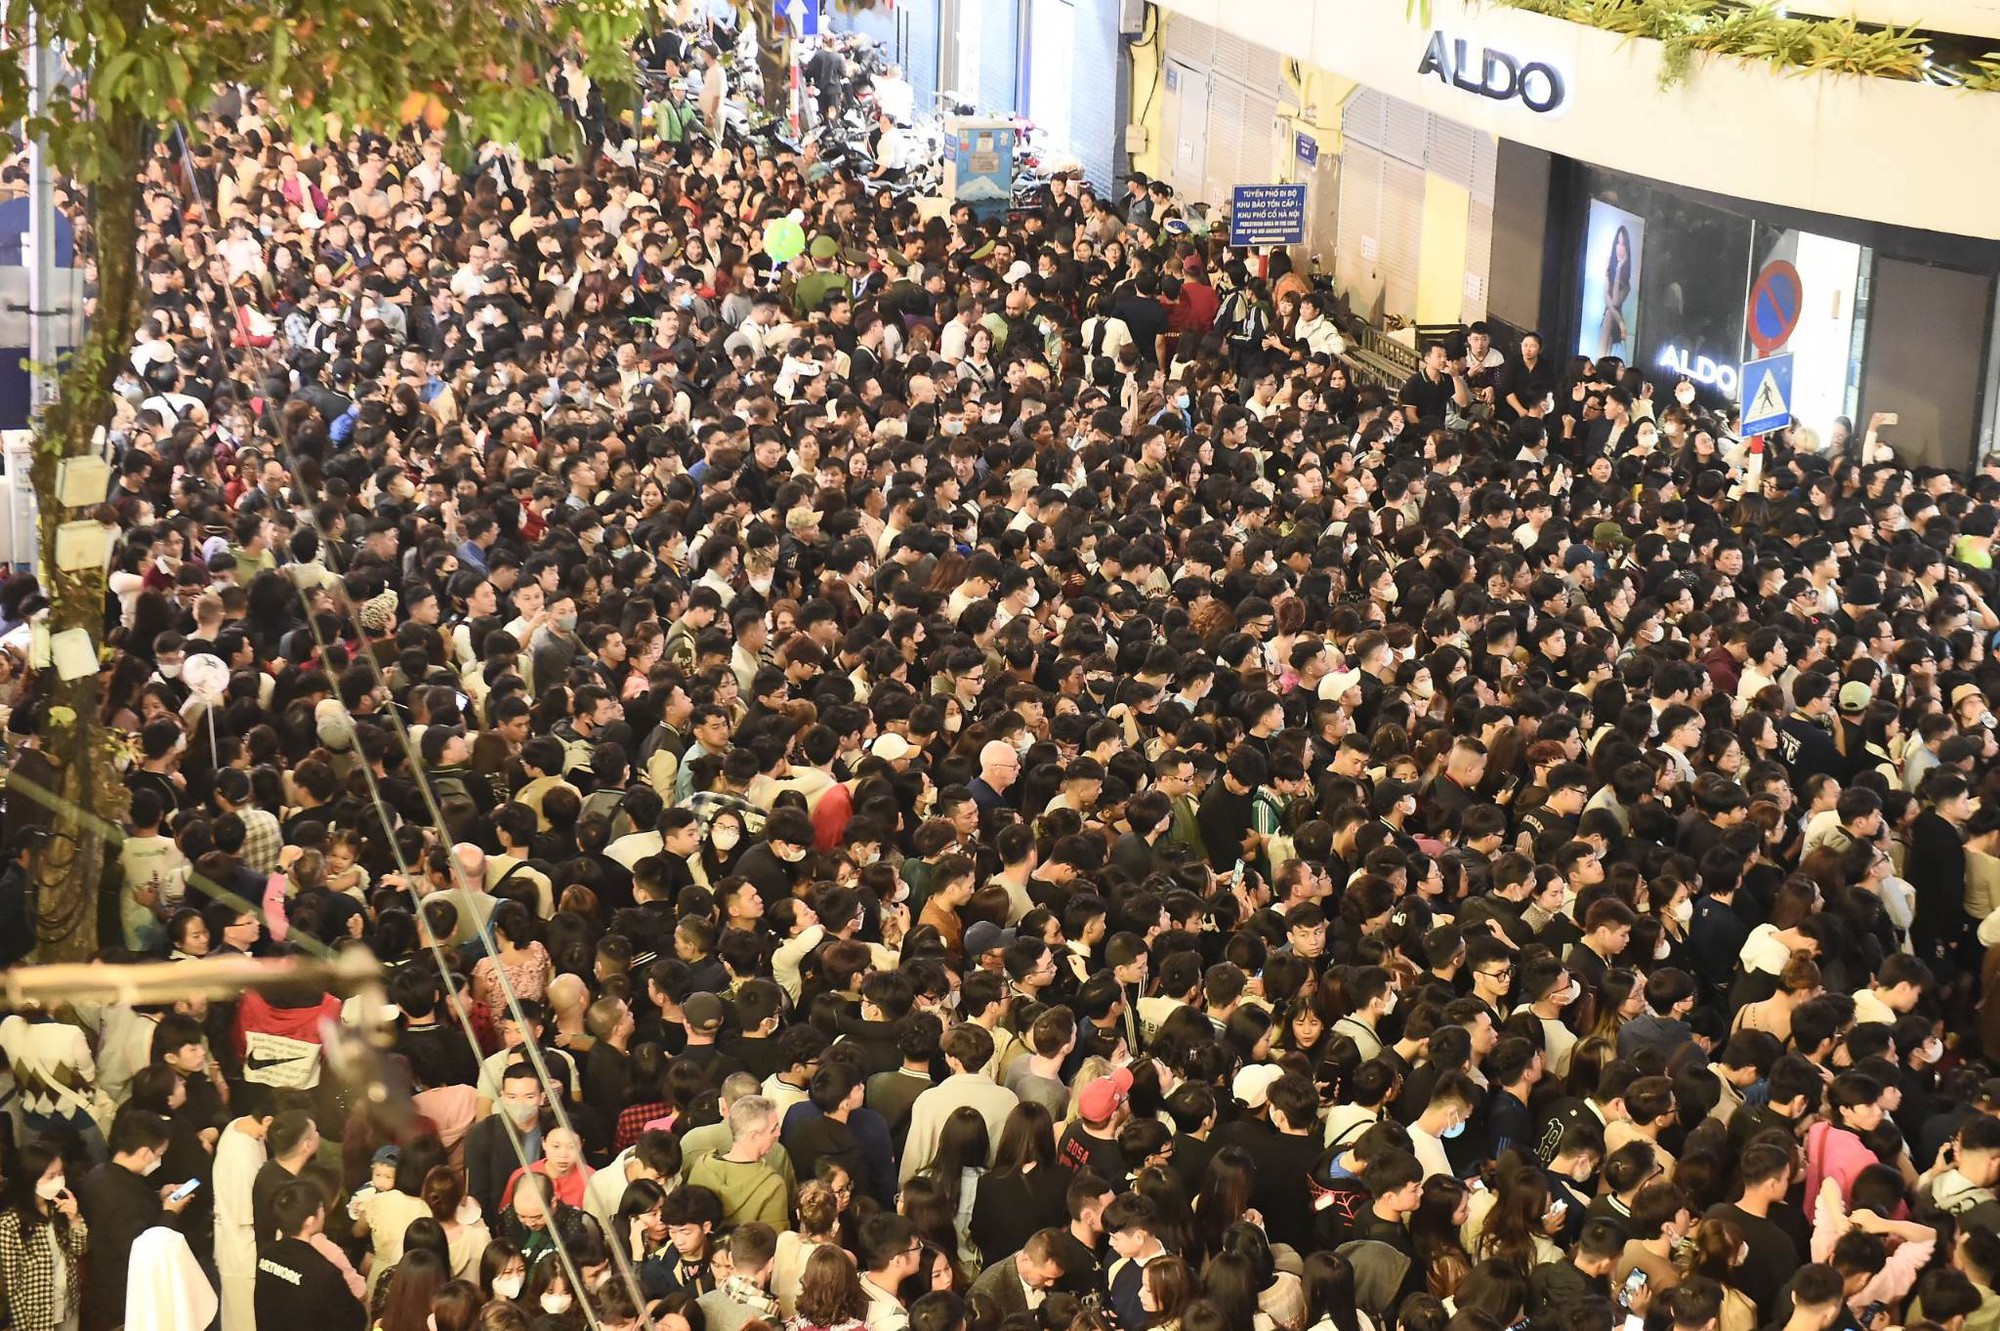 Hình ảnh nhìn đã thấy ngộp thở: Hàng nghìn người nhích từng chút ở phố đi bộ Hà Nội chờ giao thừa- Ảnh 2.